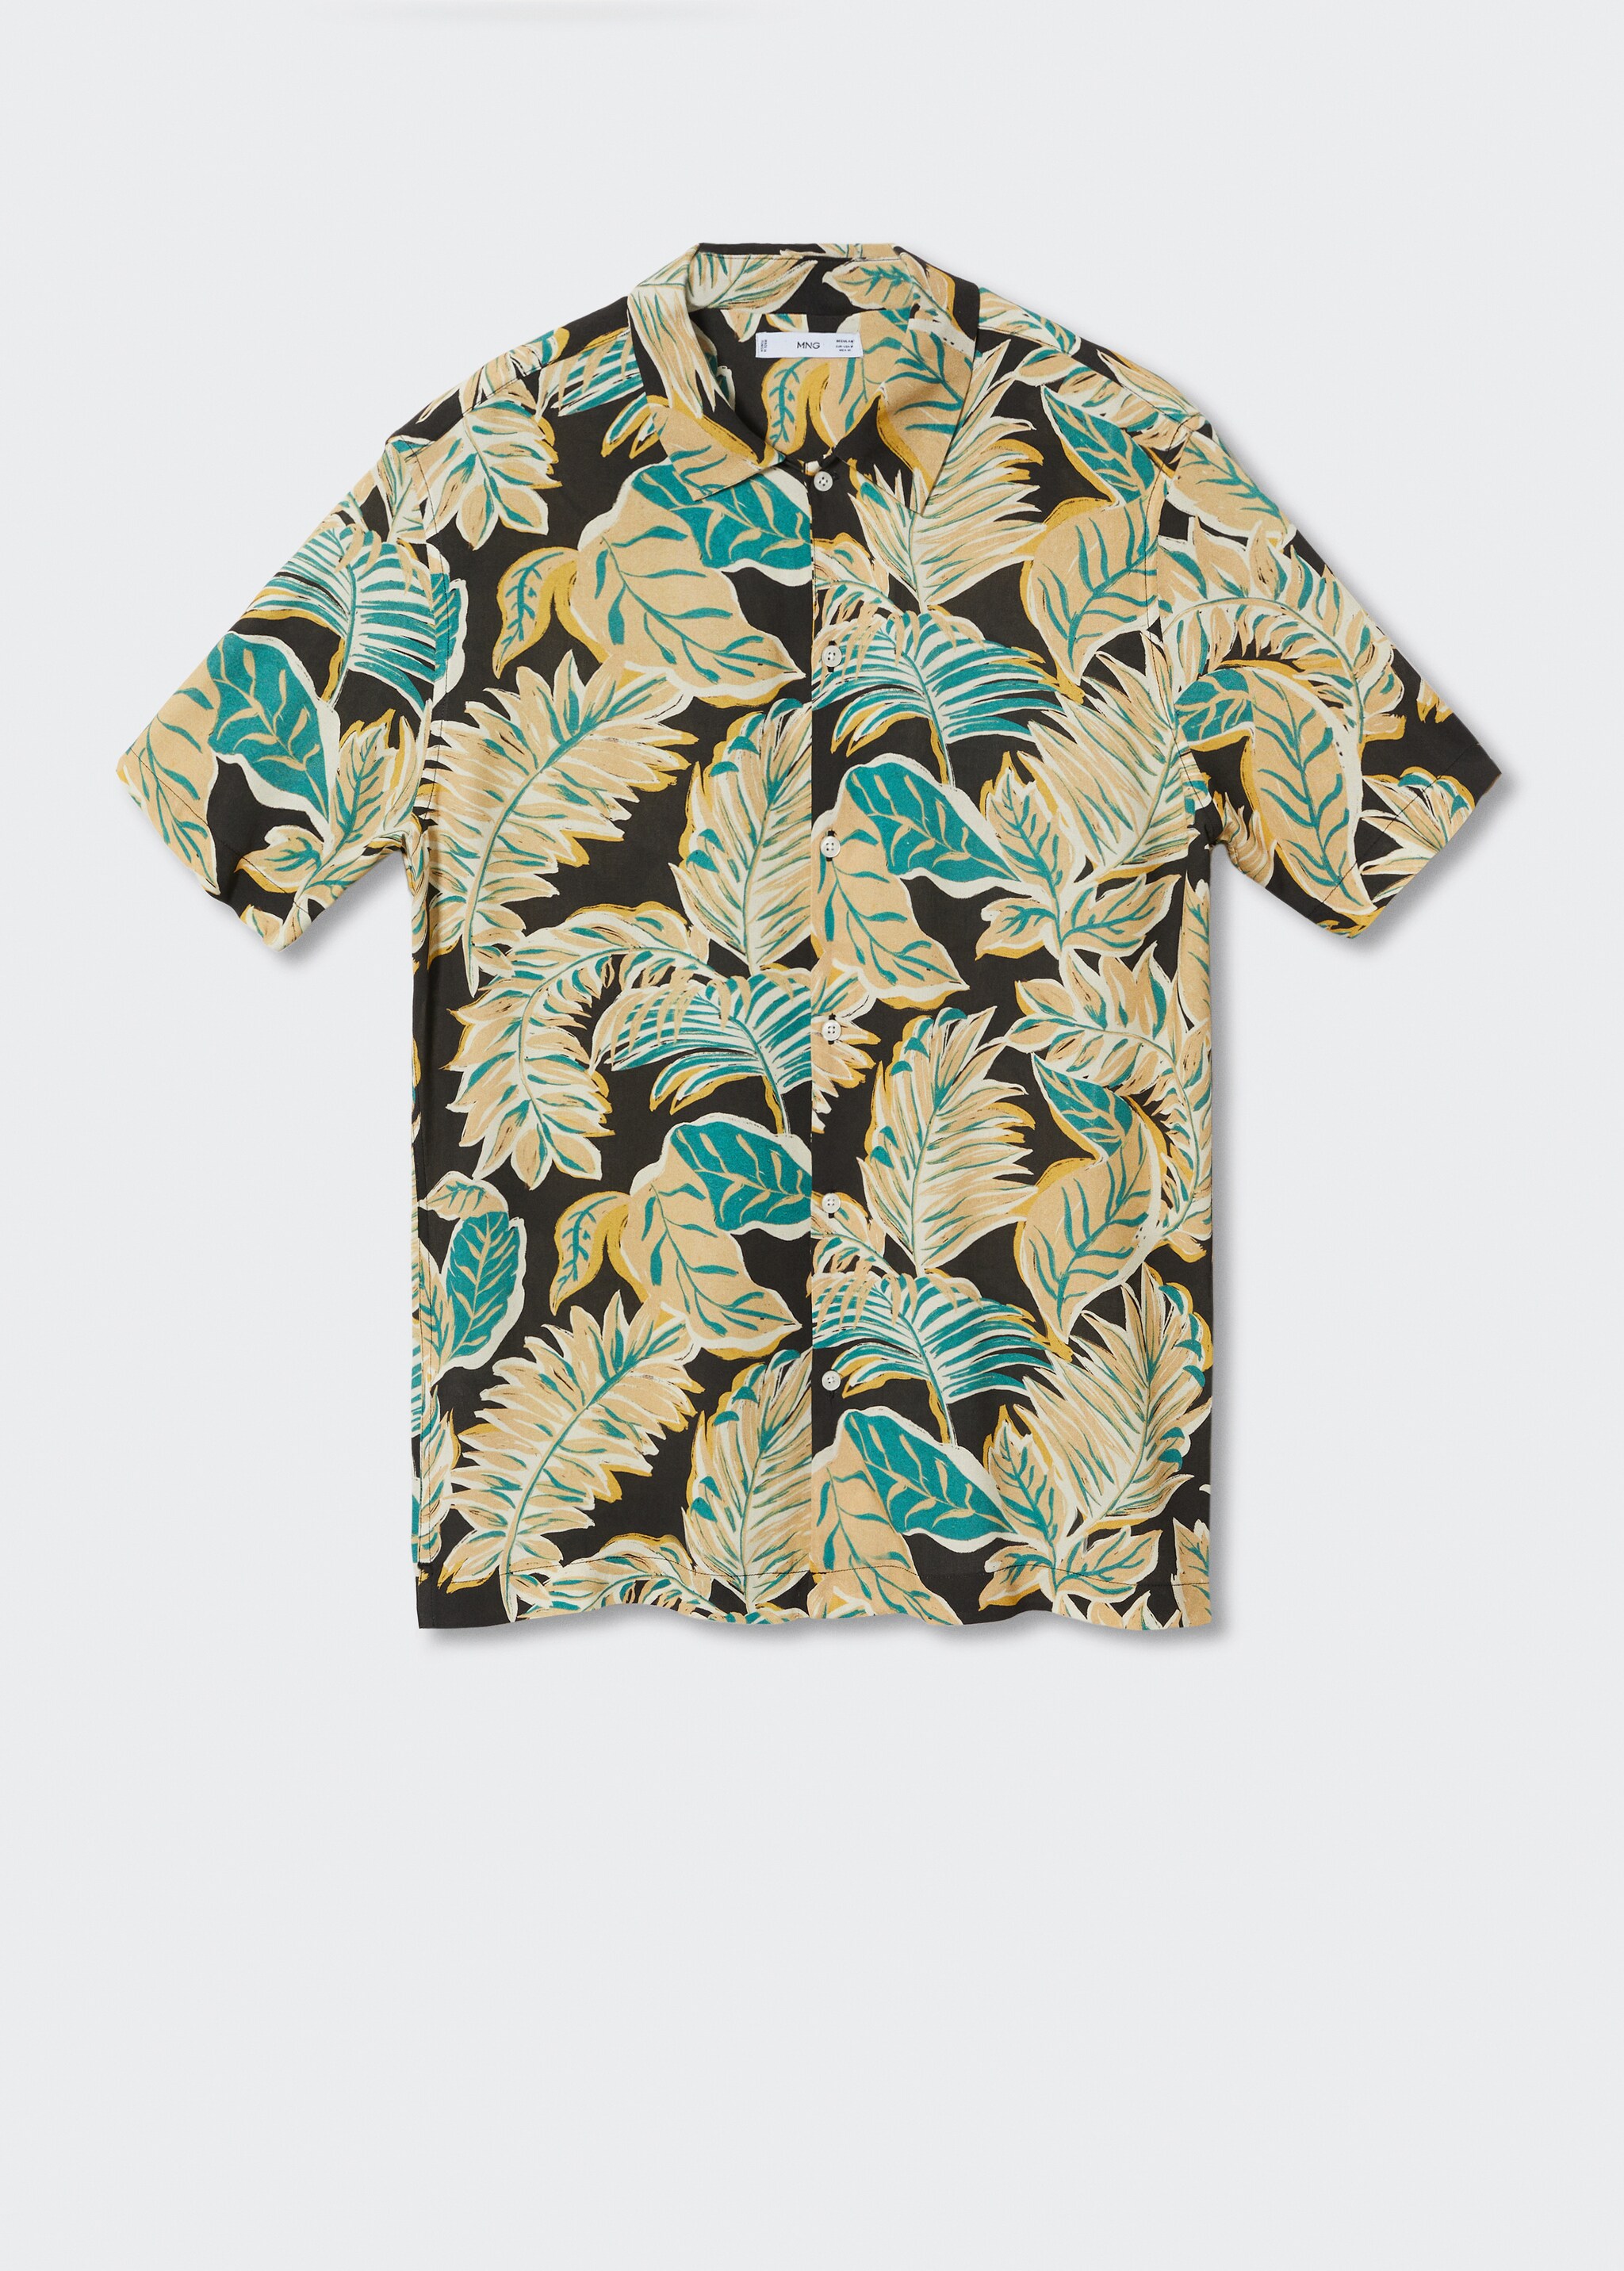 Camicia fluida hawaiana - Articolo senza modello